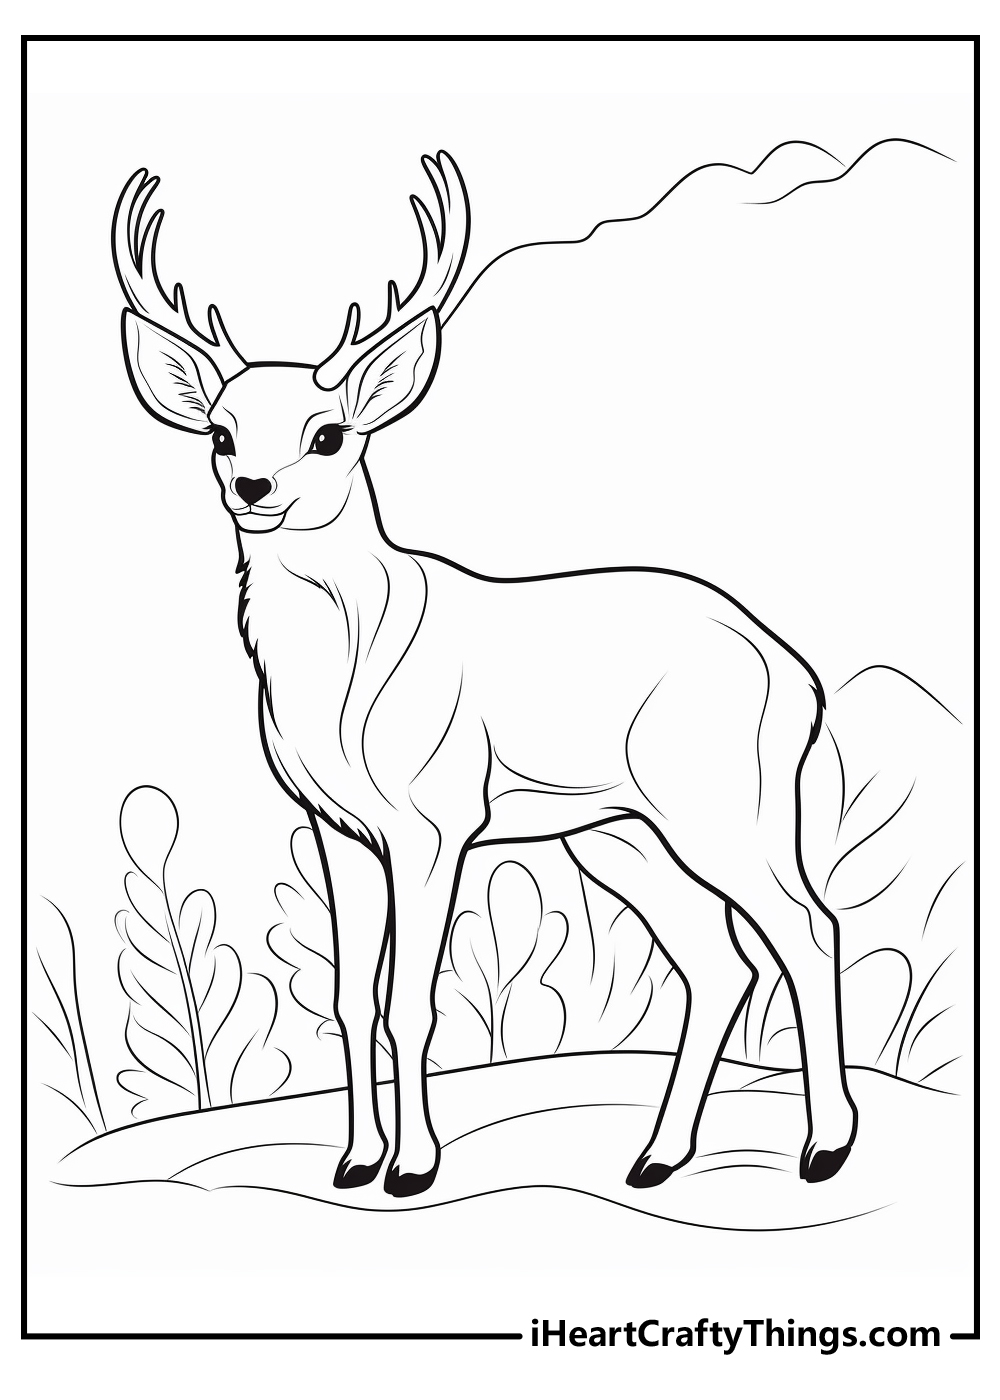 Deer coloring pages free printables